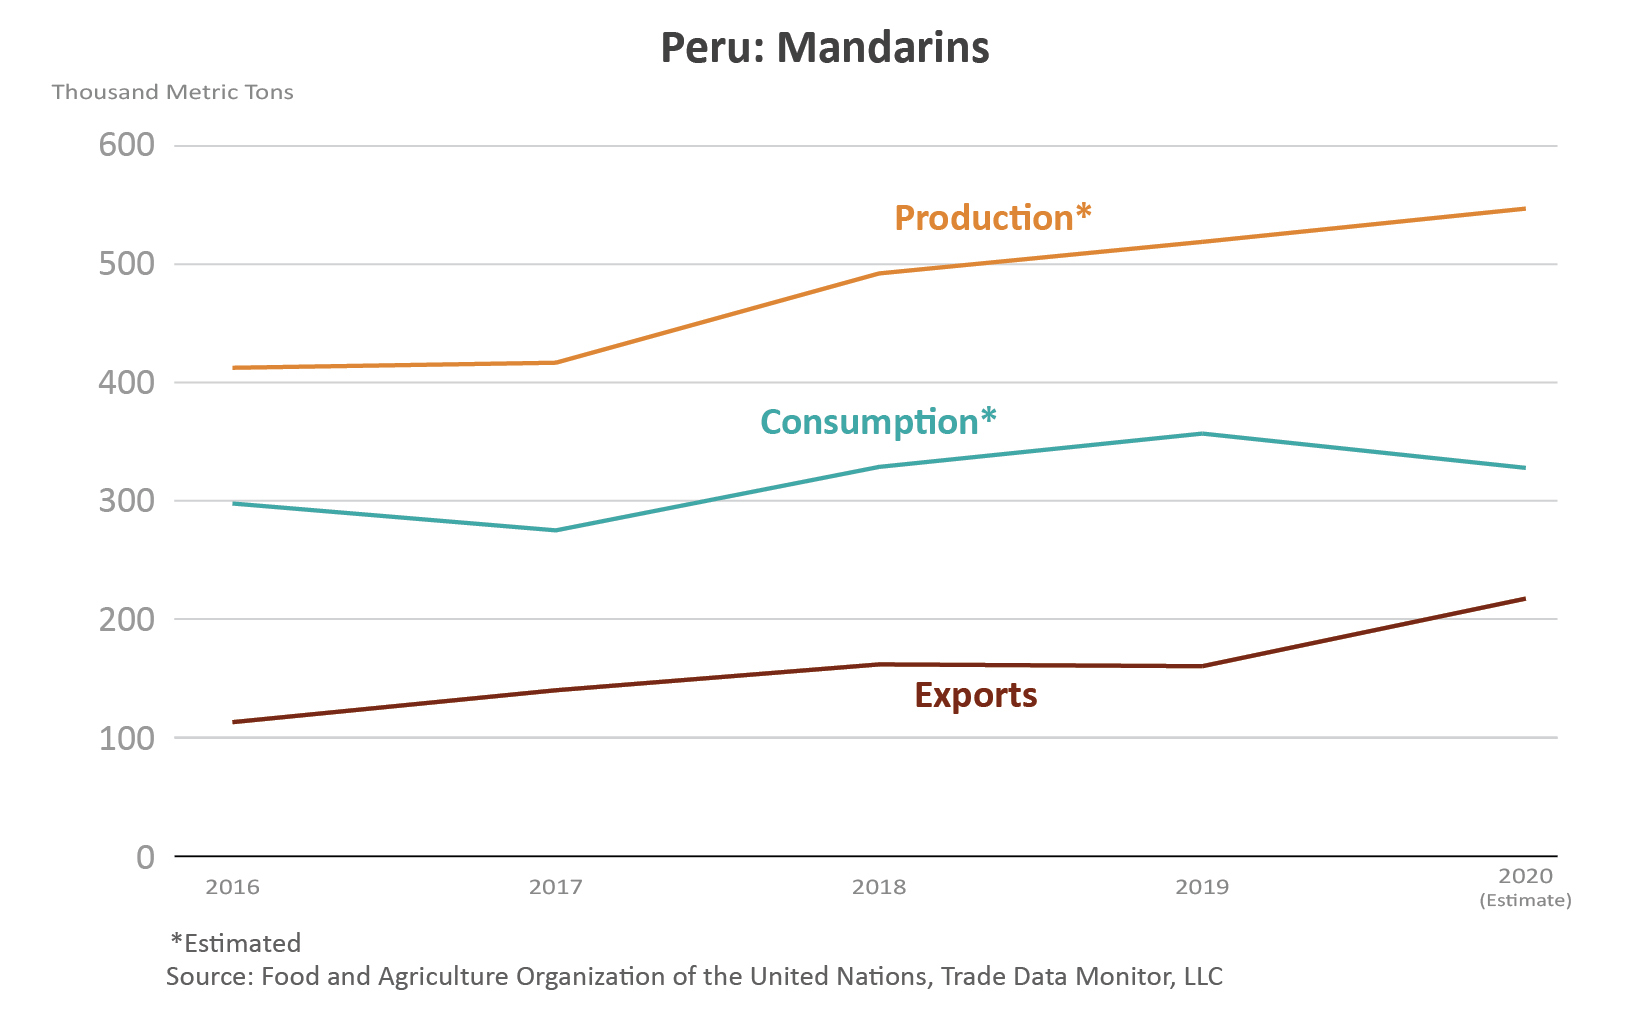 Gráfico de líneas que muestra el volumen de producción, consumo y exportaciones de las mandarinas de Perú.